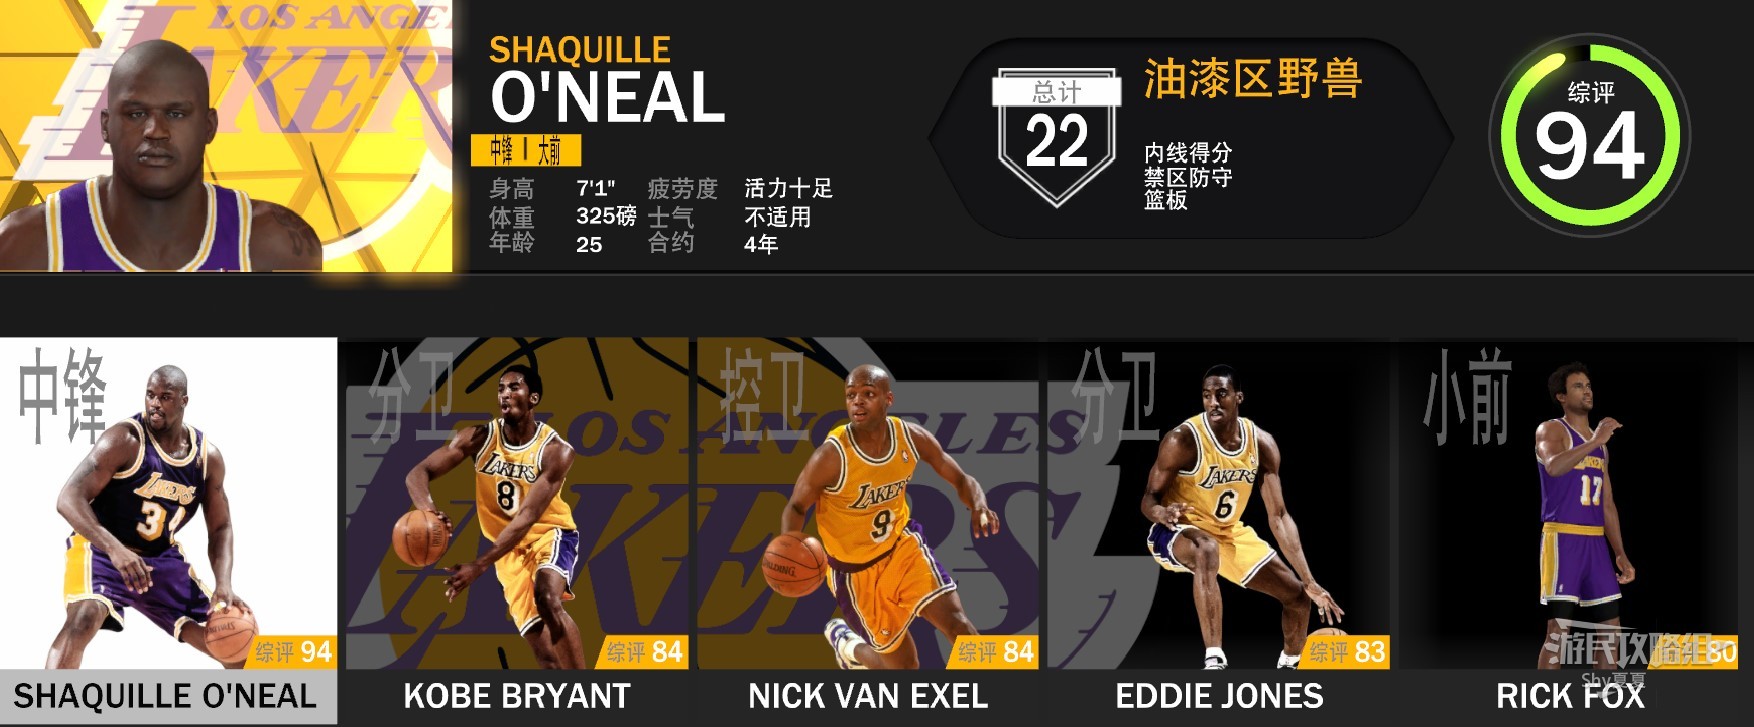 《NBA2K23》经典球队数据阵容一览_95/96赛季-99/00赛季 - 第6张